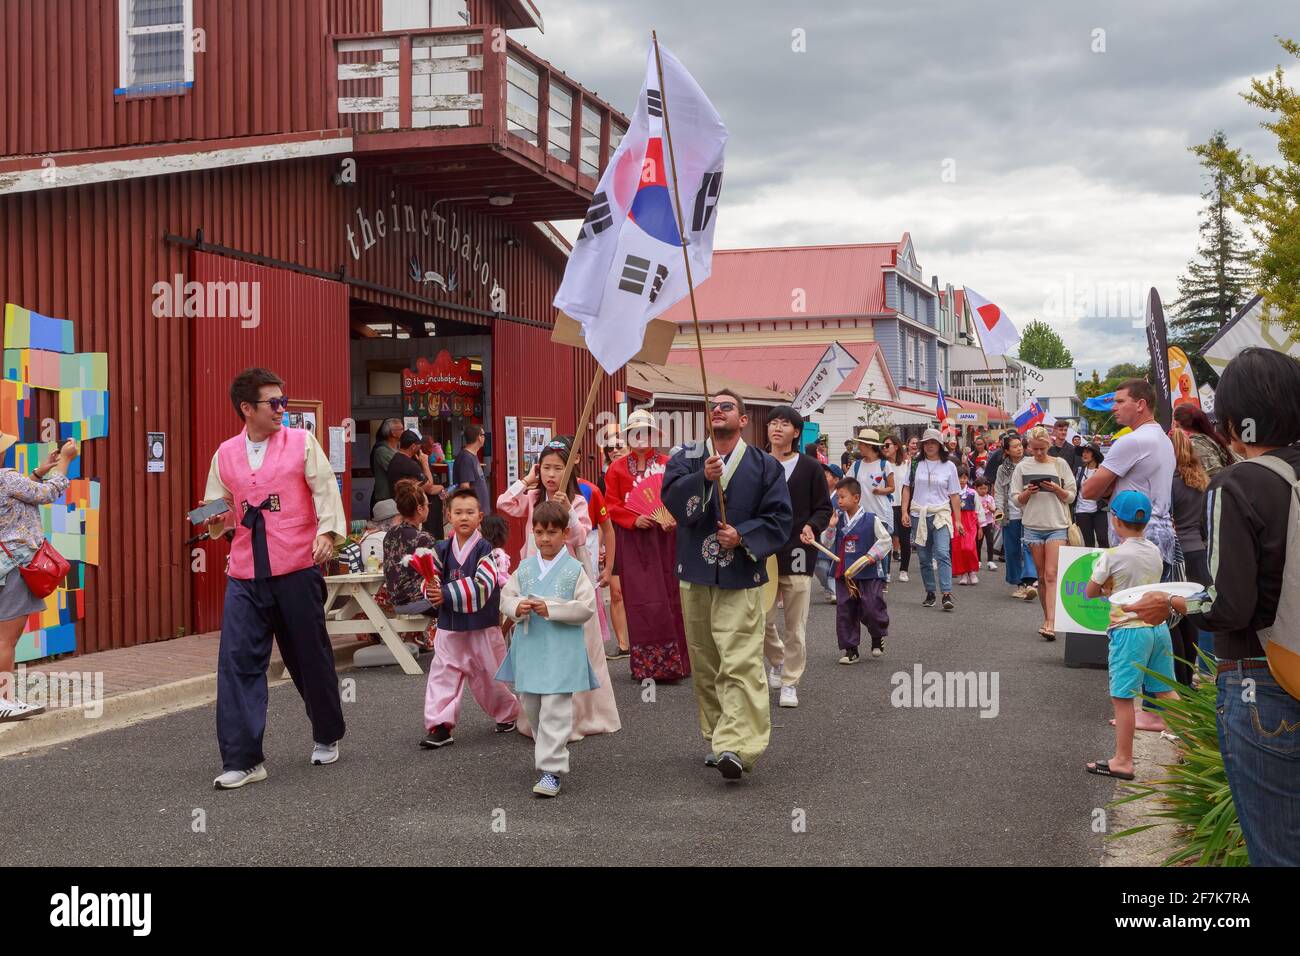 Menschen in koreanischem Volkstracht, die eine südkoreanische Flagge tragen, nehmen an einer multikulturellen Parade Teil. Tauranga, Neuseeland Stockfoto